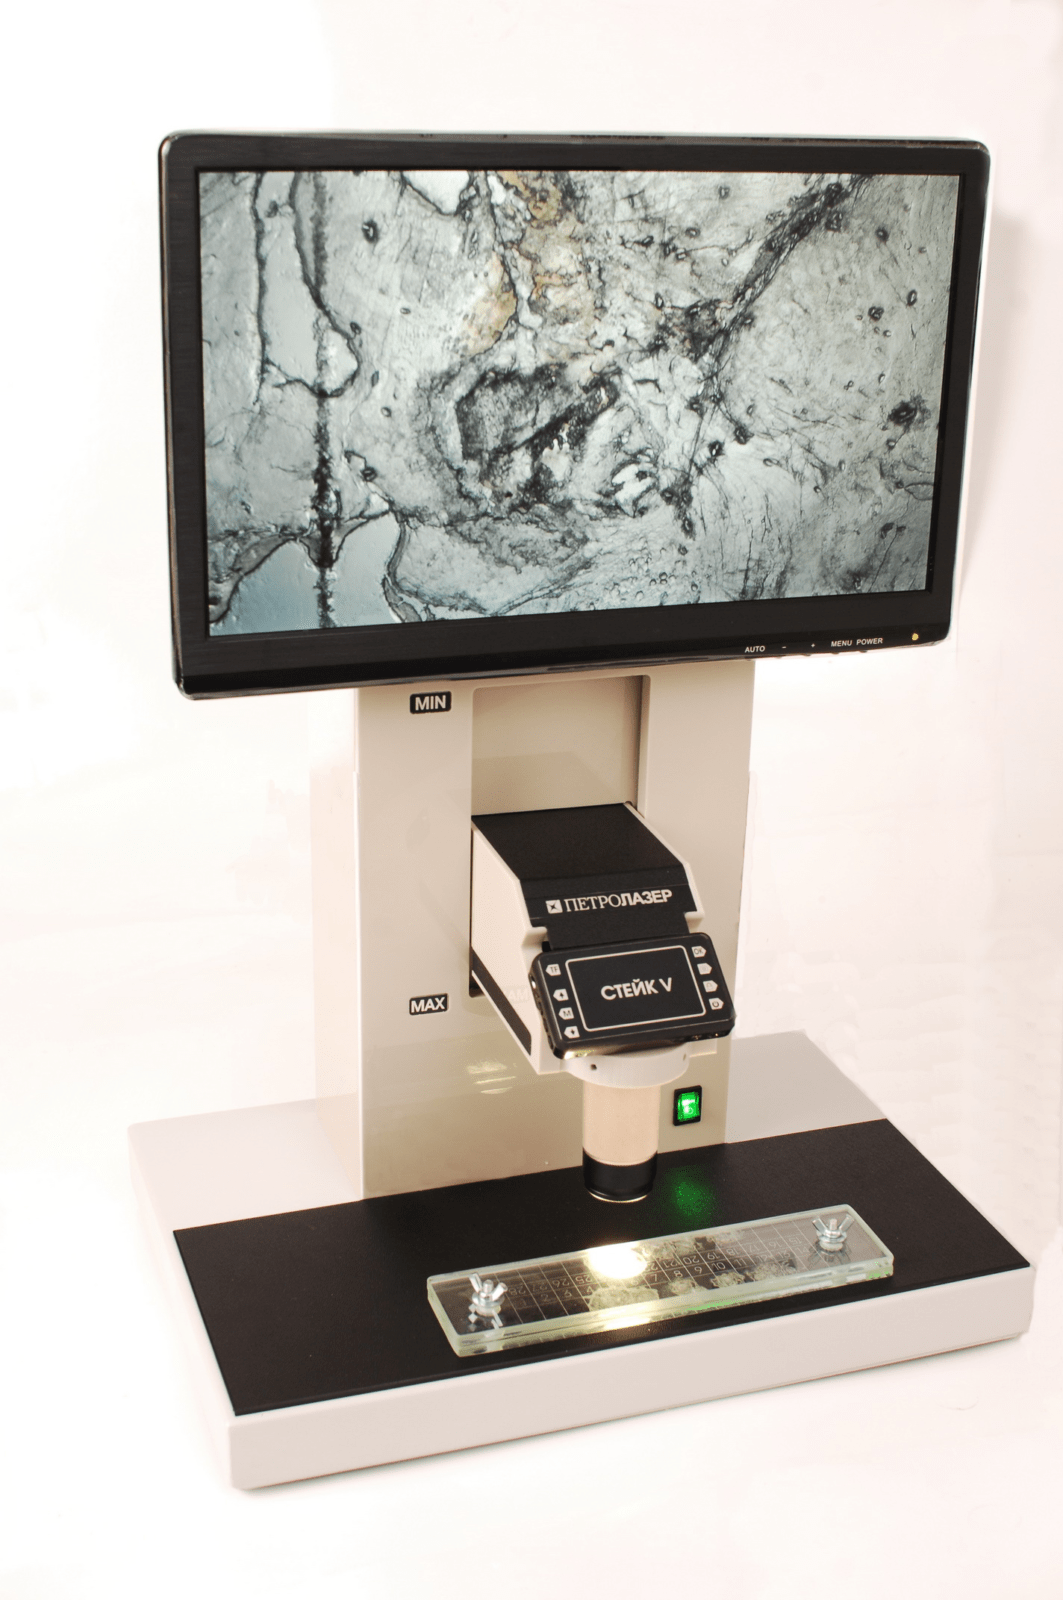 Стейк V вар 3 — трихинеллоскоп с электронным выводом изображения